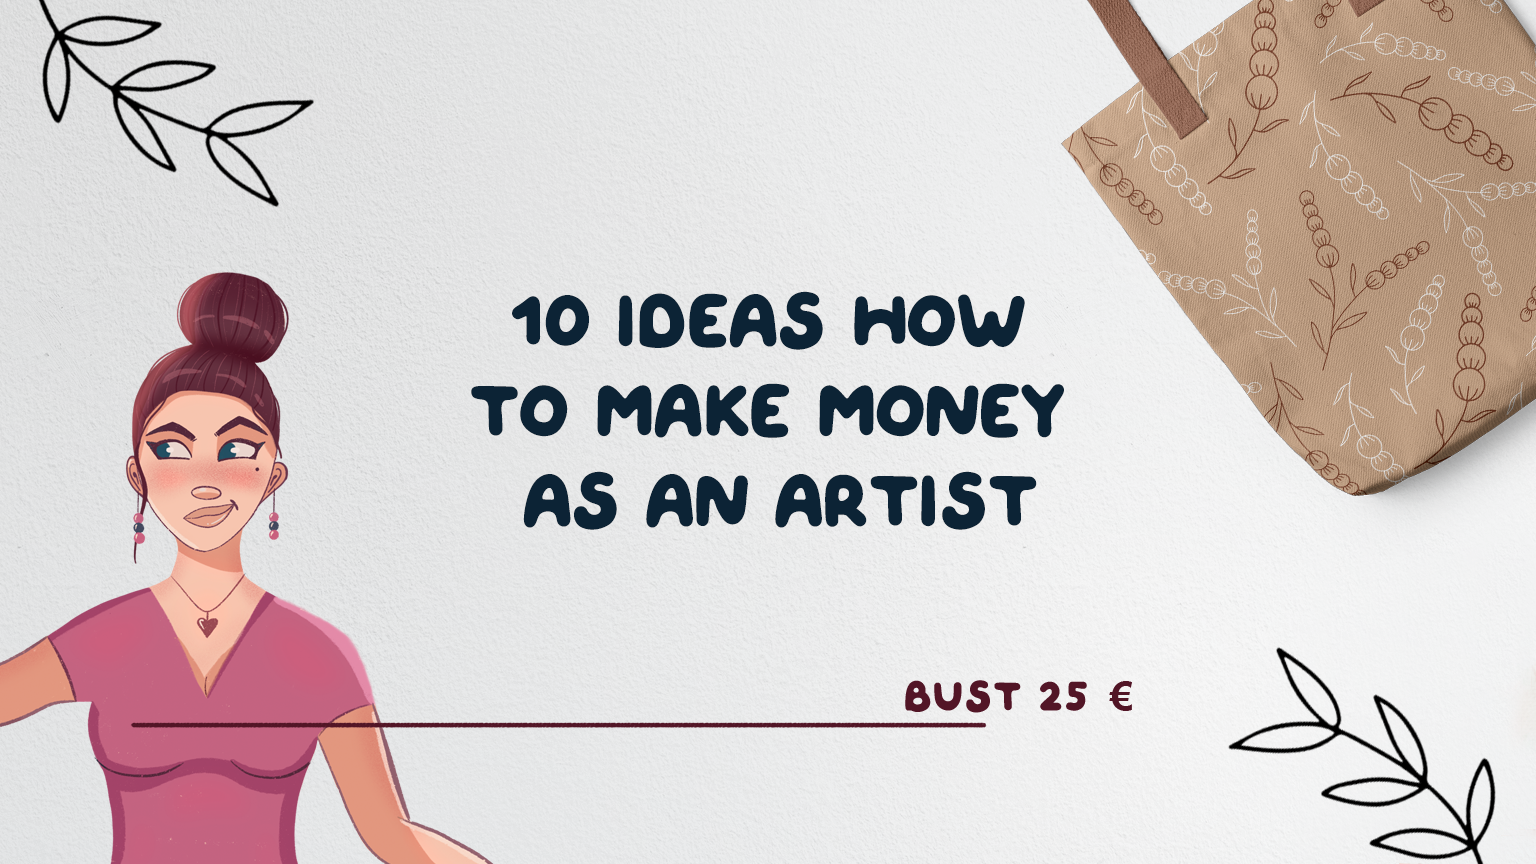 How to make money as an artist – 10 ideas!